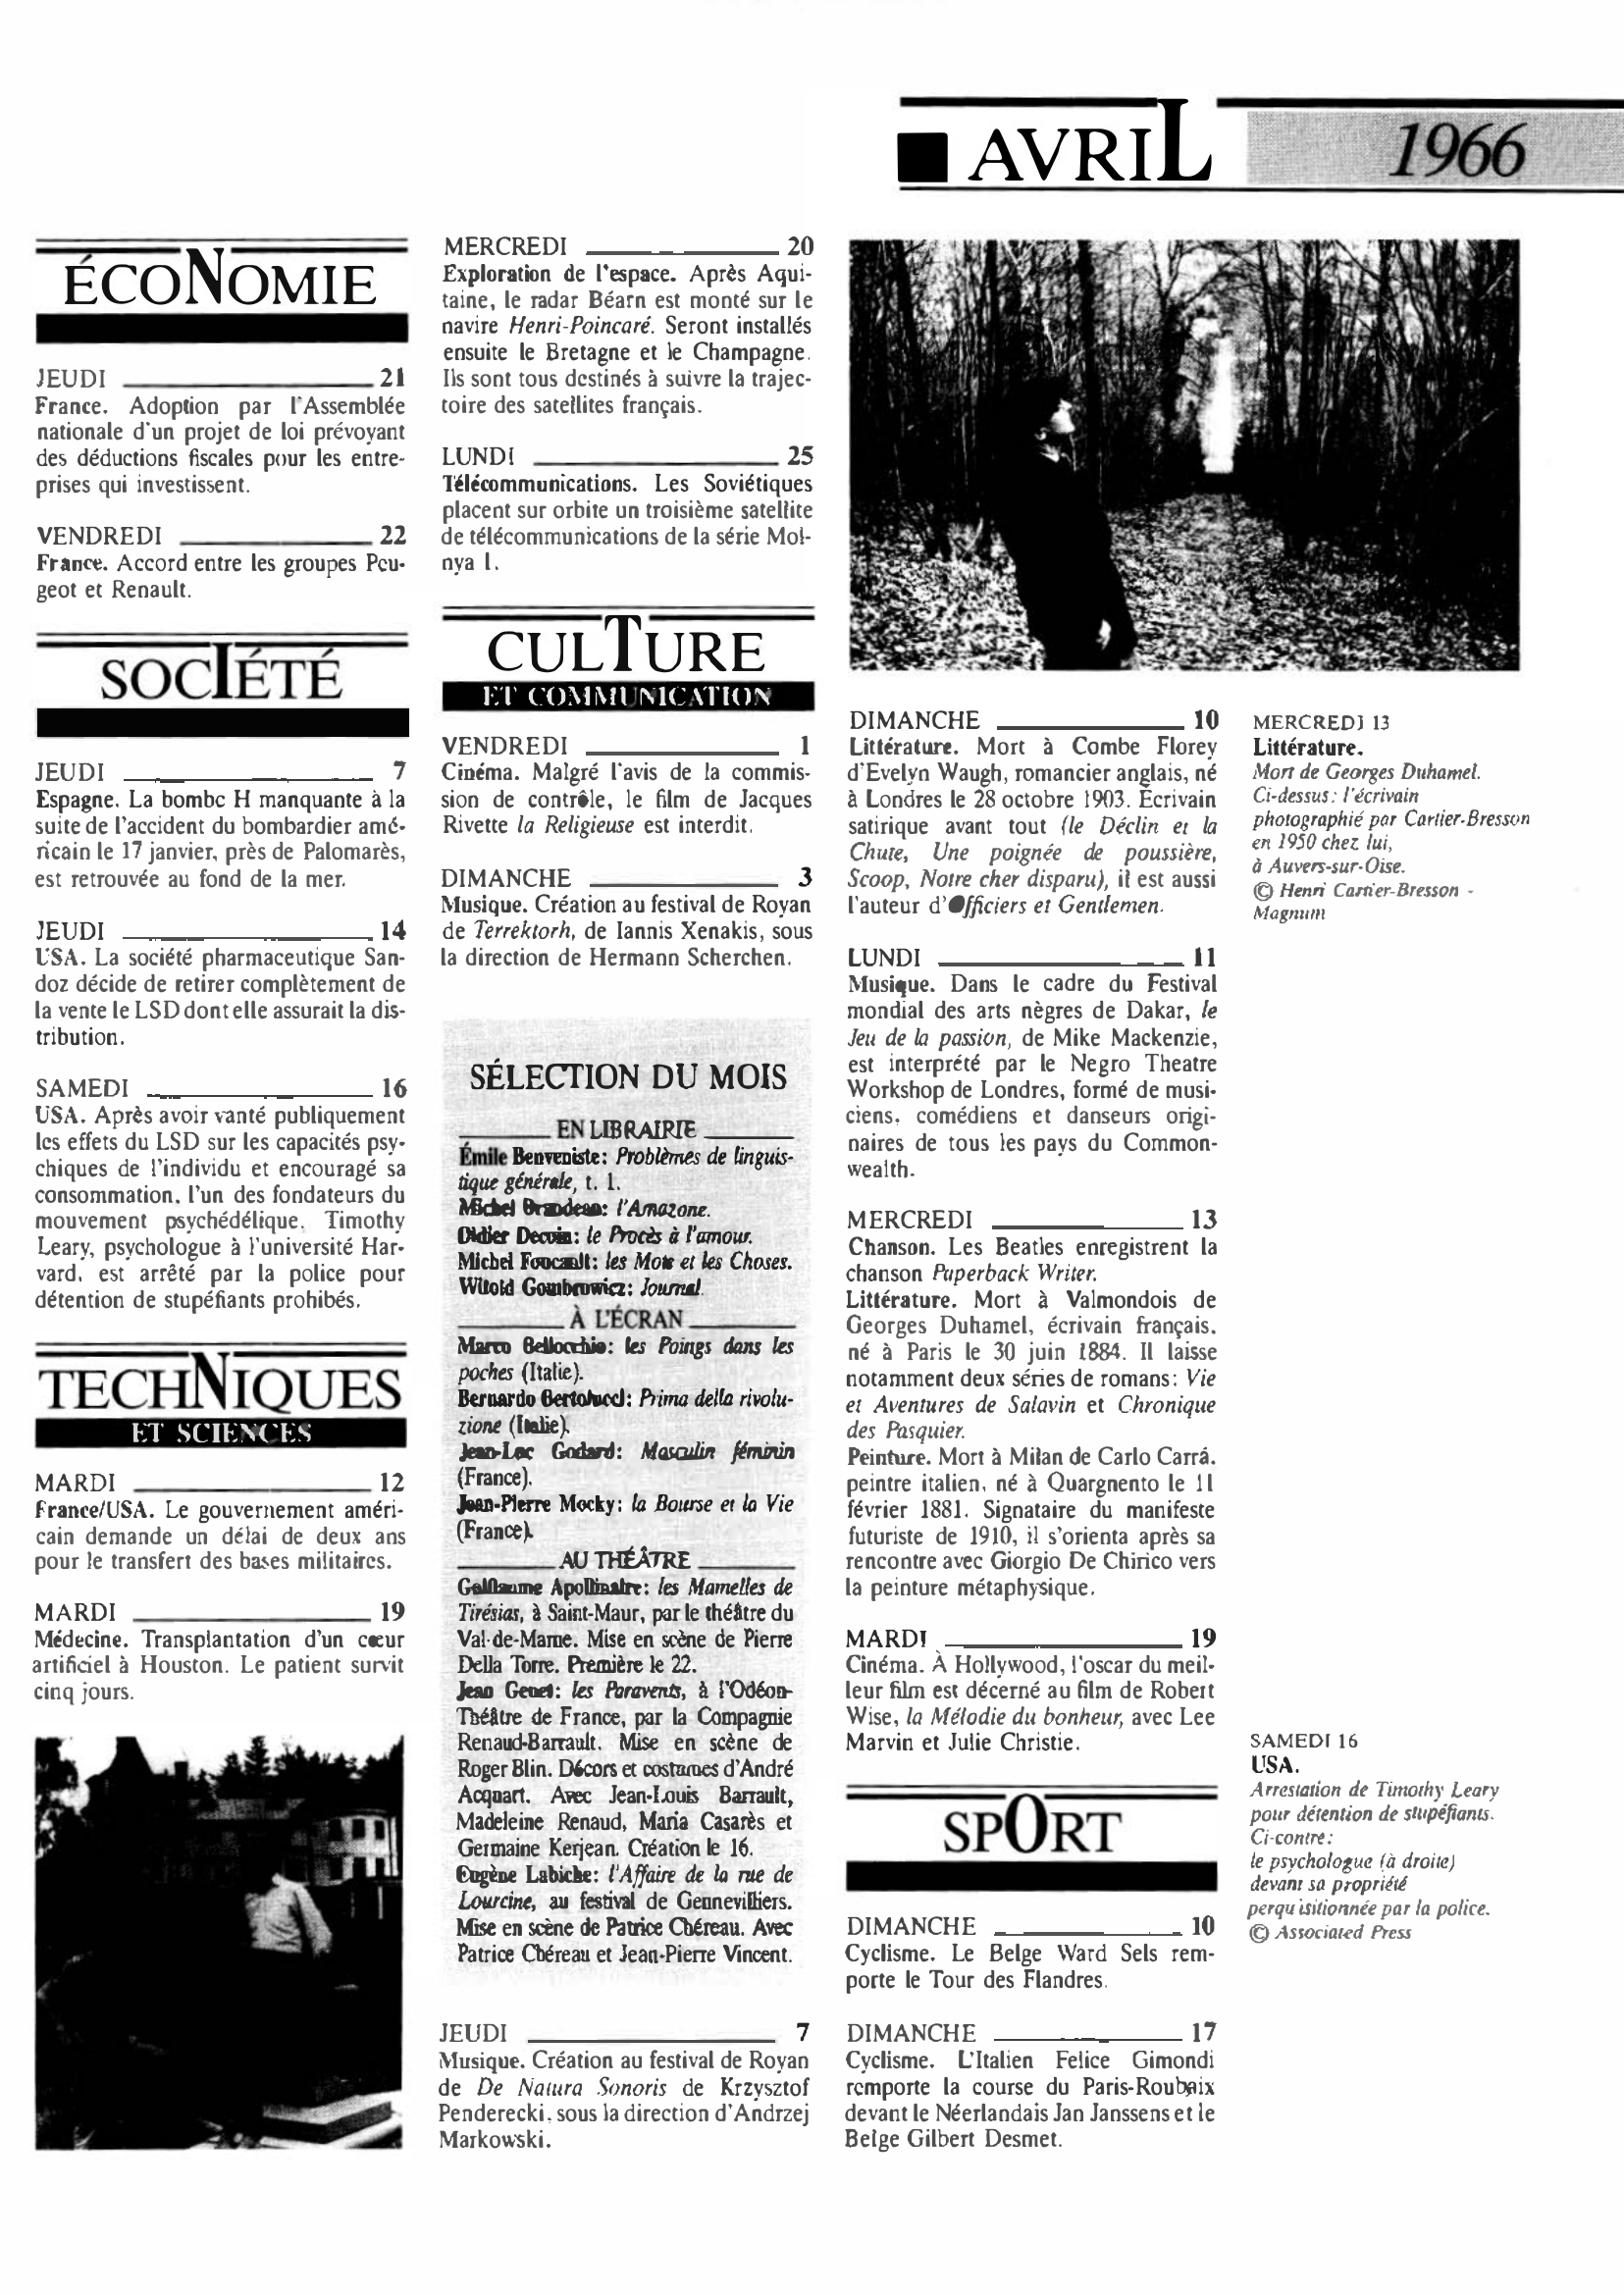 Prévisualisation du document 1966 Avril dans le monde (histoire chronologique)